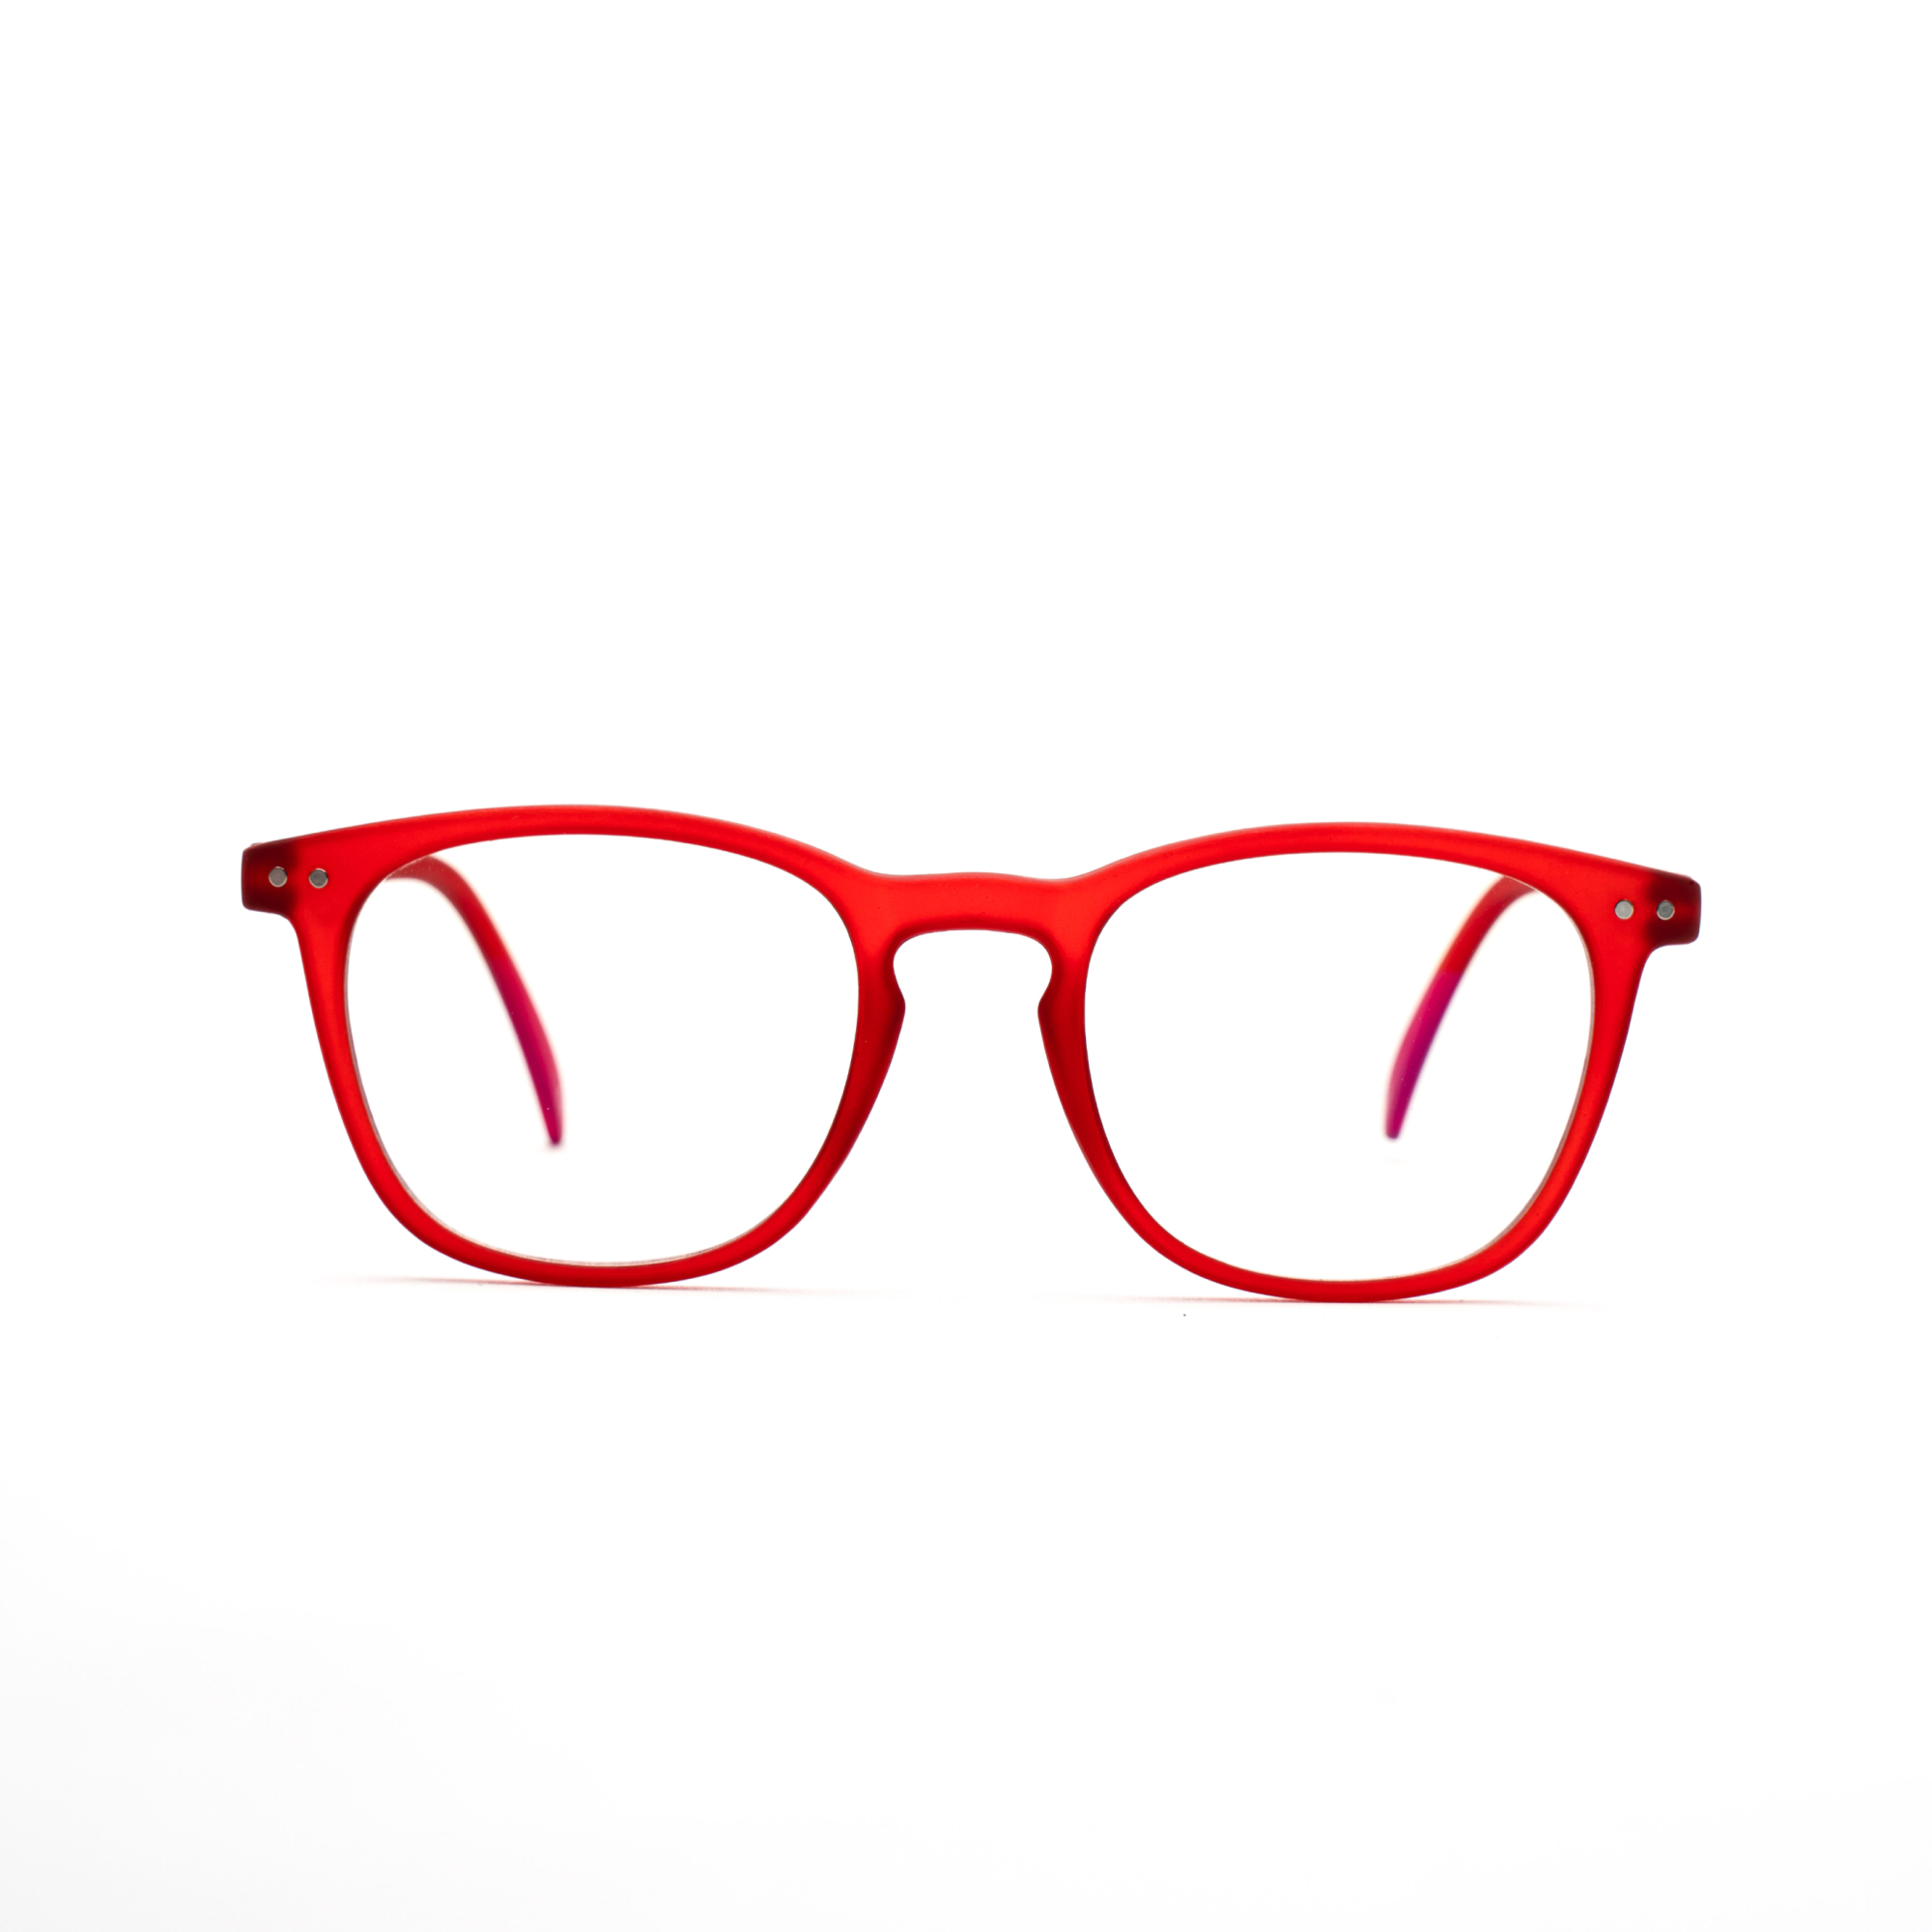 Men's reading glasses – William Ultimate m - Red